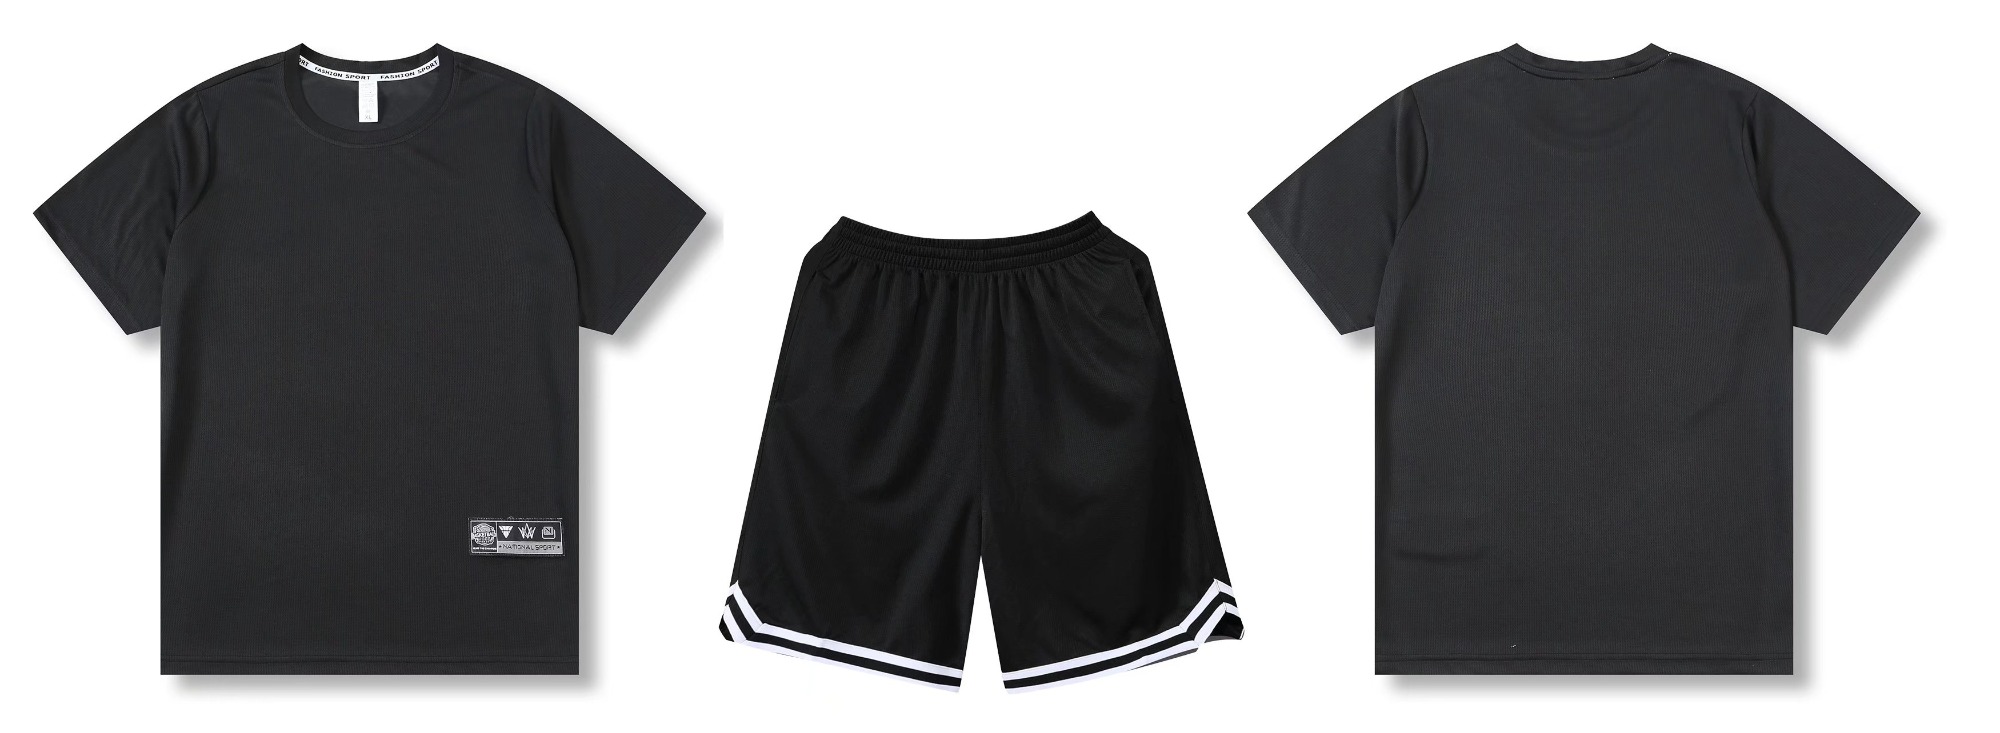 Popular Design Fashion Sportswear Sports Black Activewear Casual Uniform-YW